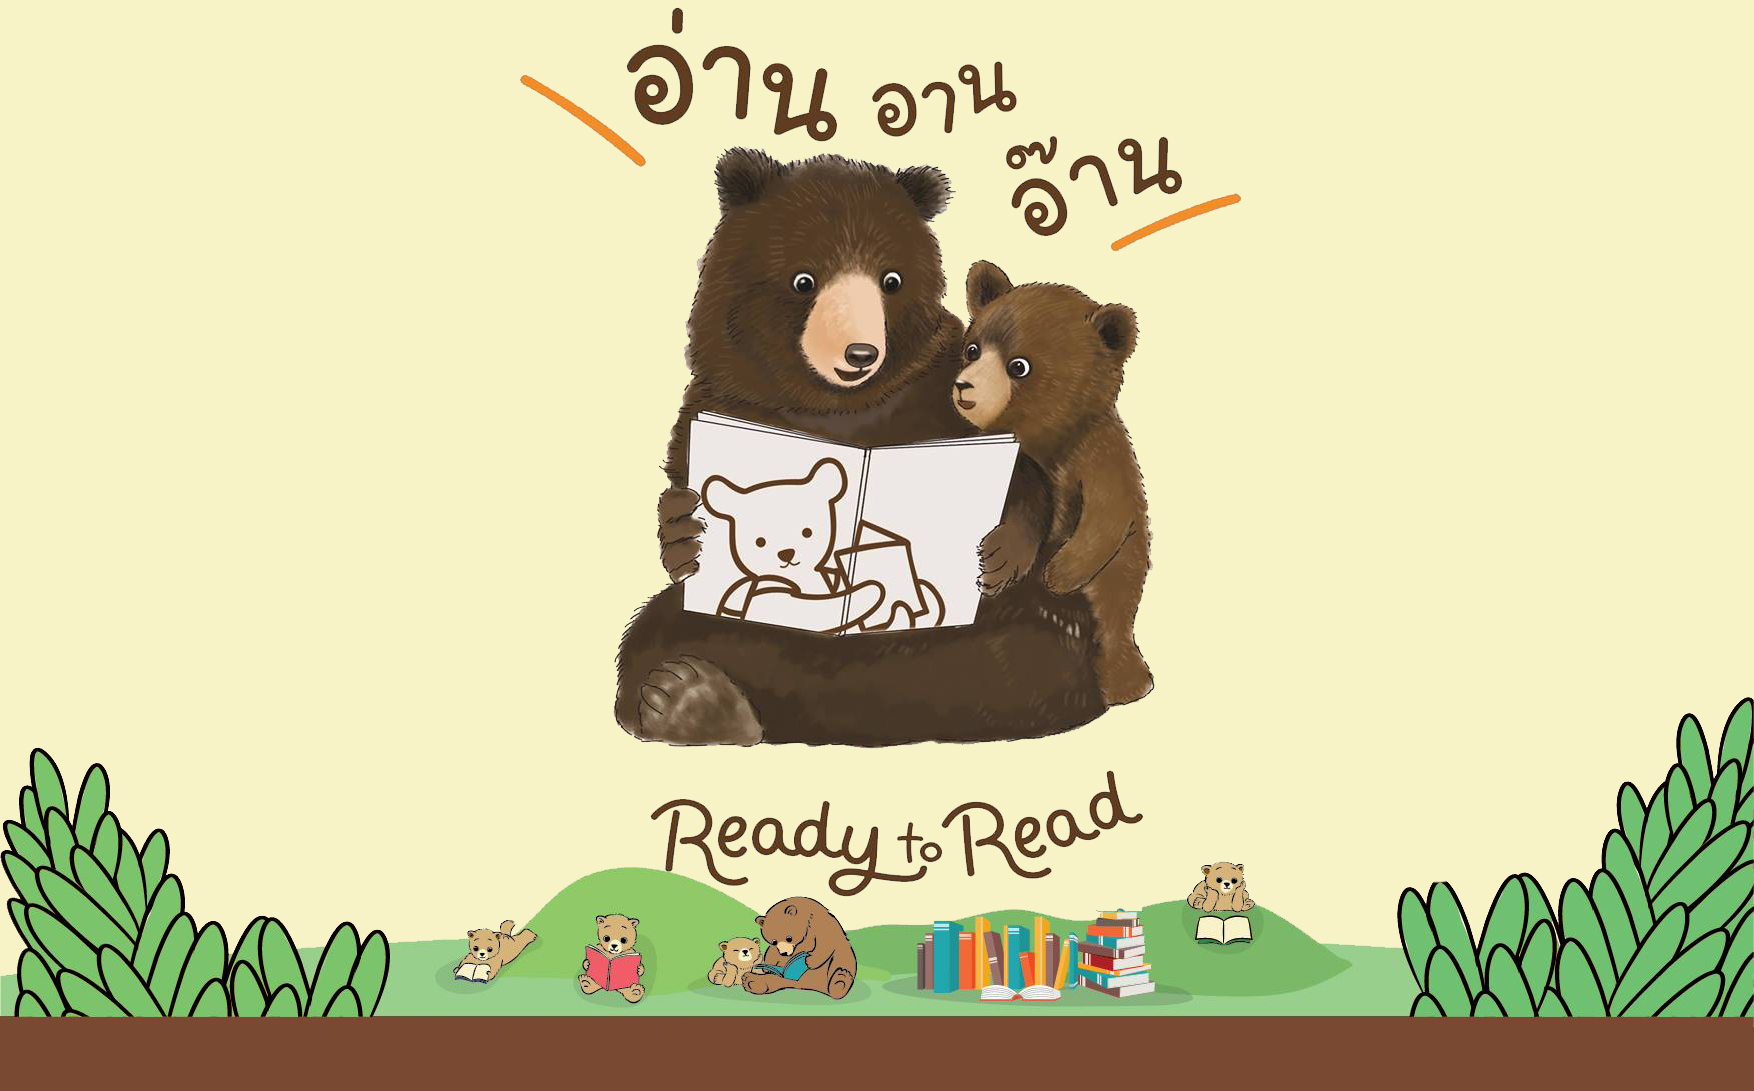 การอ่าน การเรียนรู้ ขั้นบันไดการอ่าน นิทรรศการ ปลดล็อก สมอง อบรม อ่านหนังสือ เด็ก เด็กไทย เยาวชน